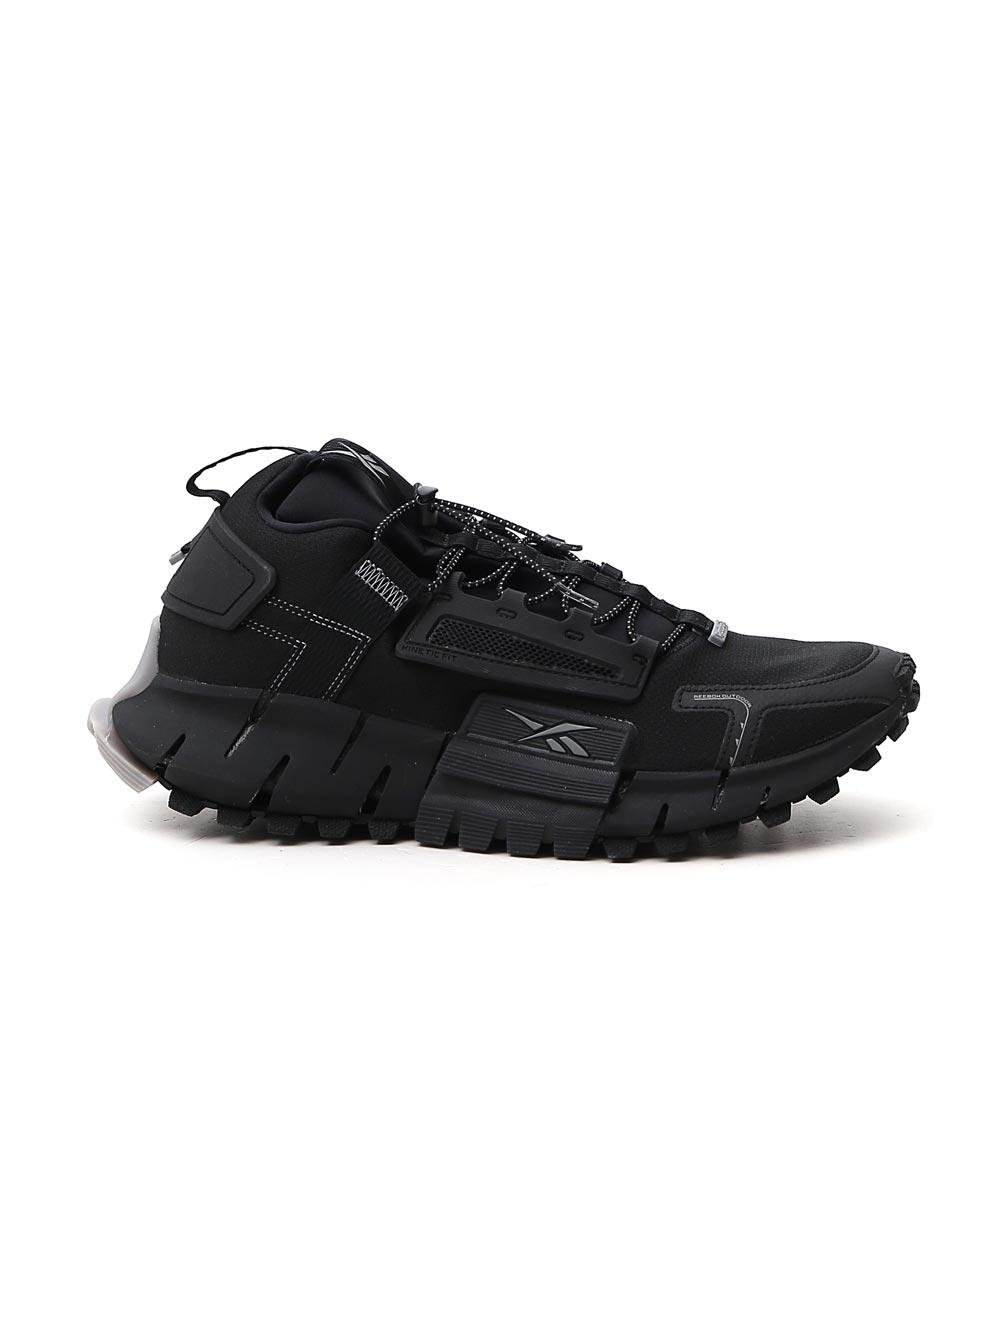 Reebok Zig Kinetica Edge Sneakers in Black for Men | Lyst